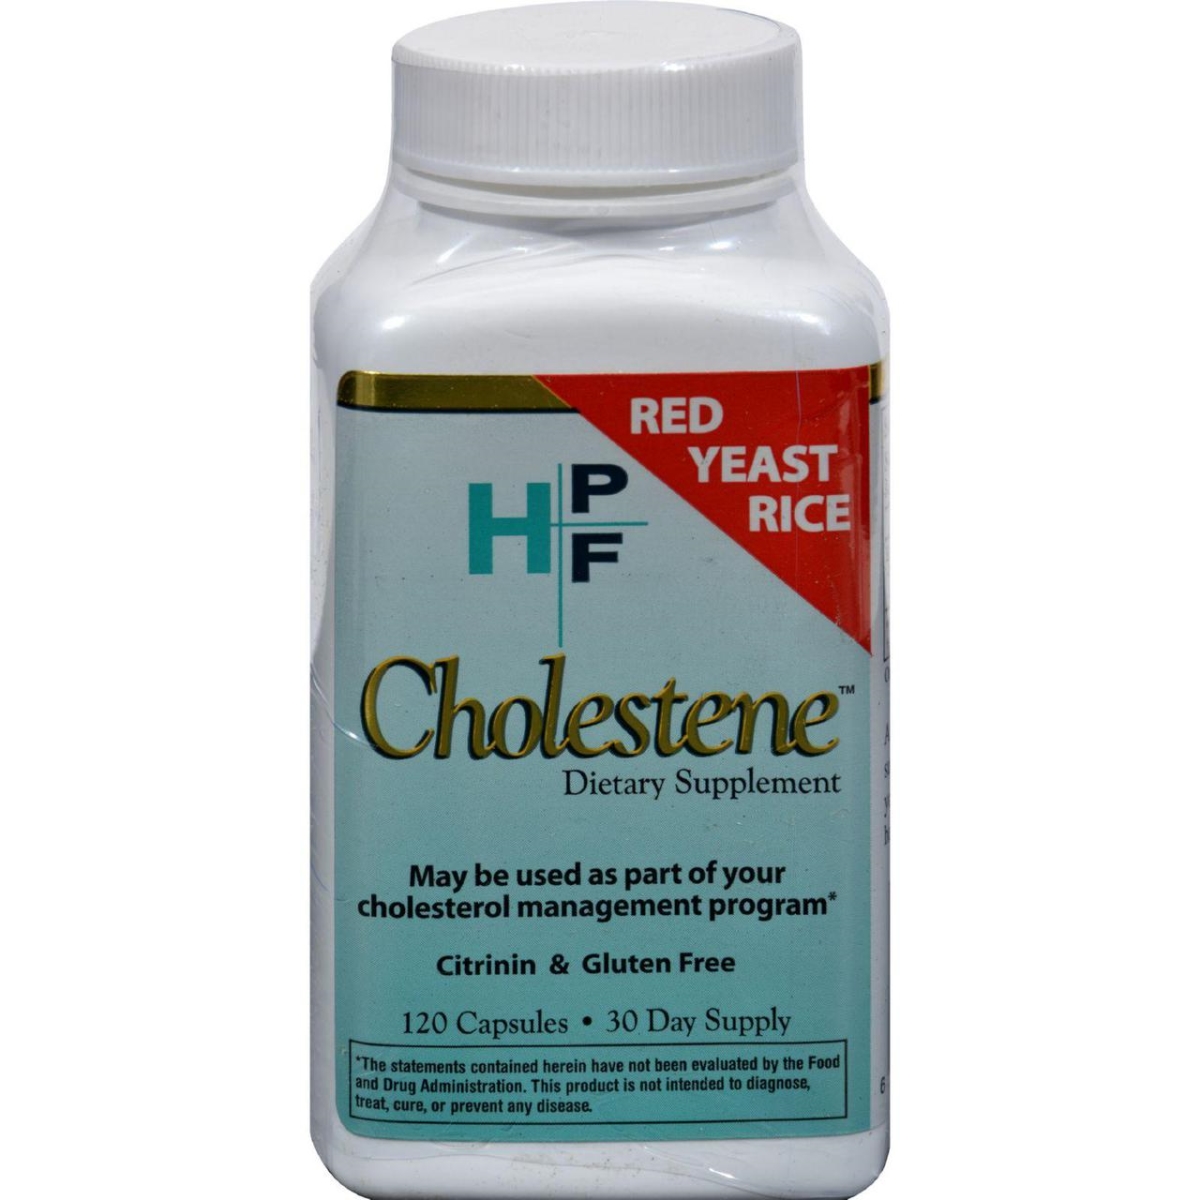 Hg0418236 Hpf Cholestene Red Yeast Rice - 120 Capsules